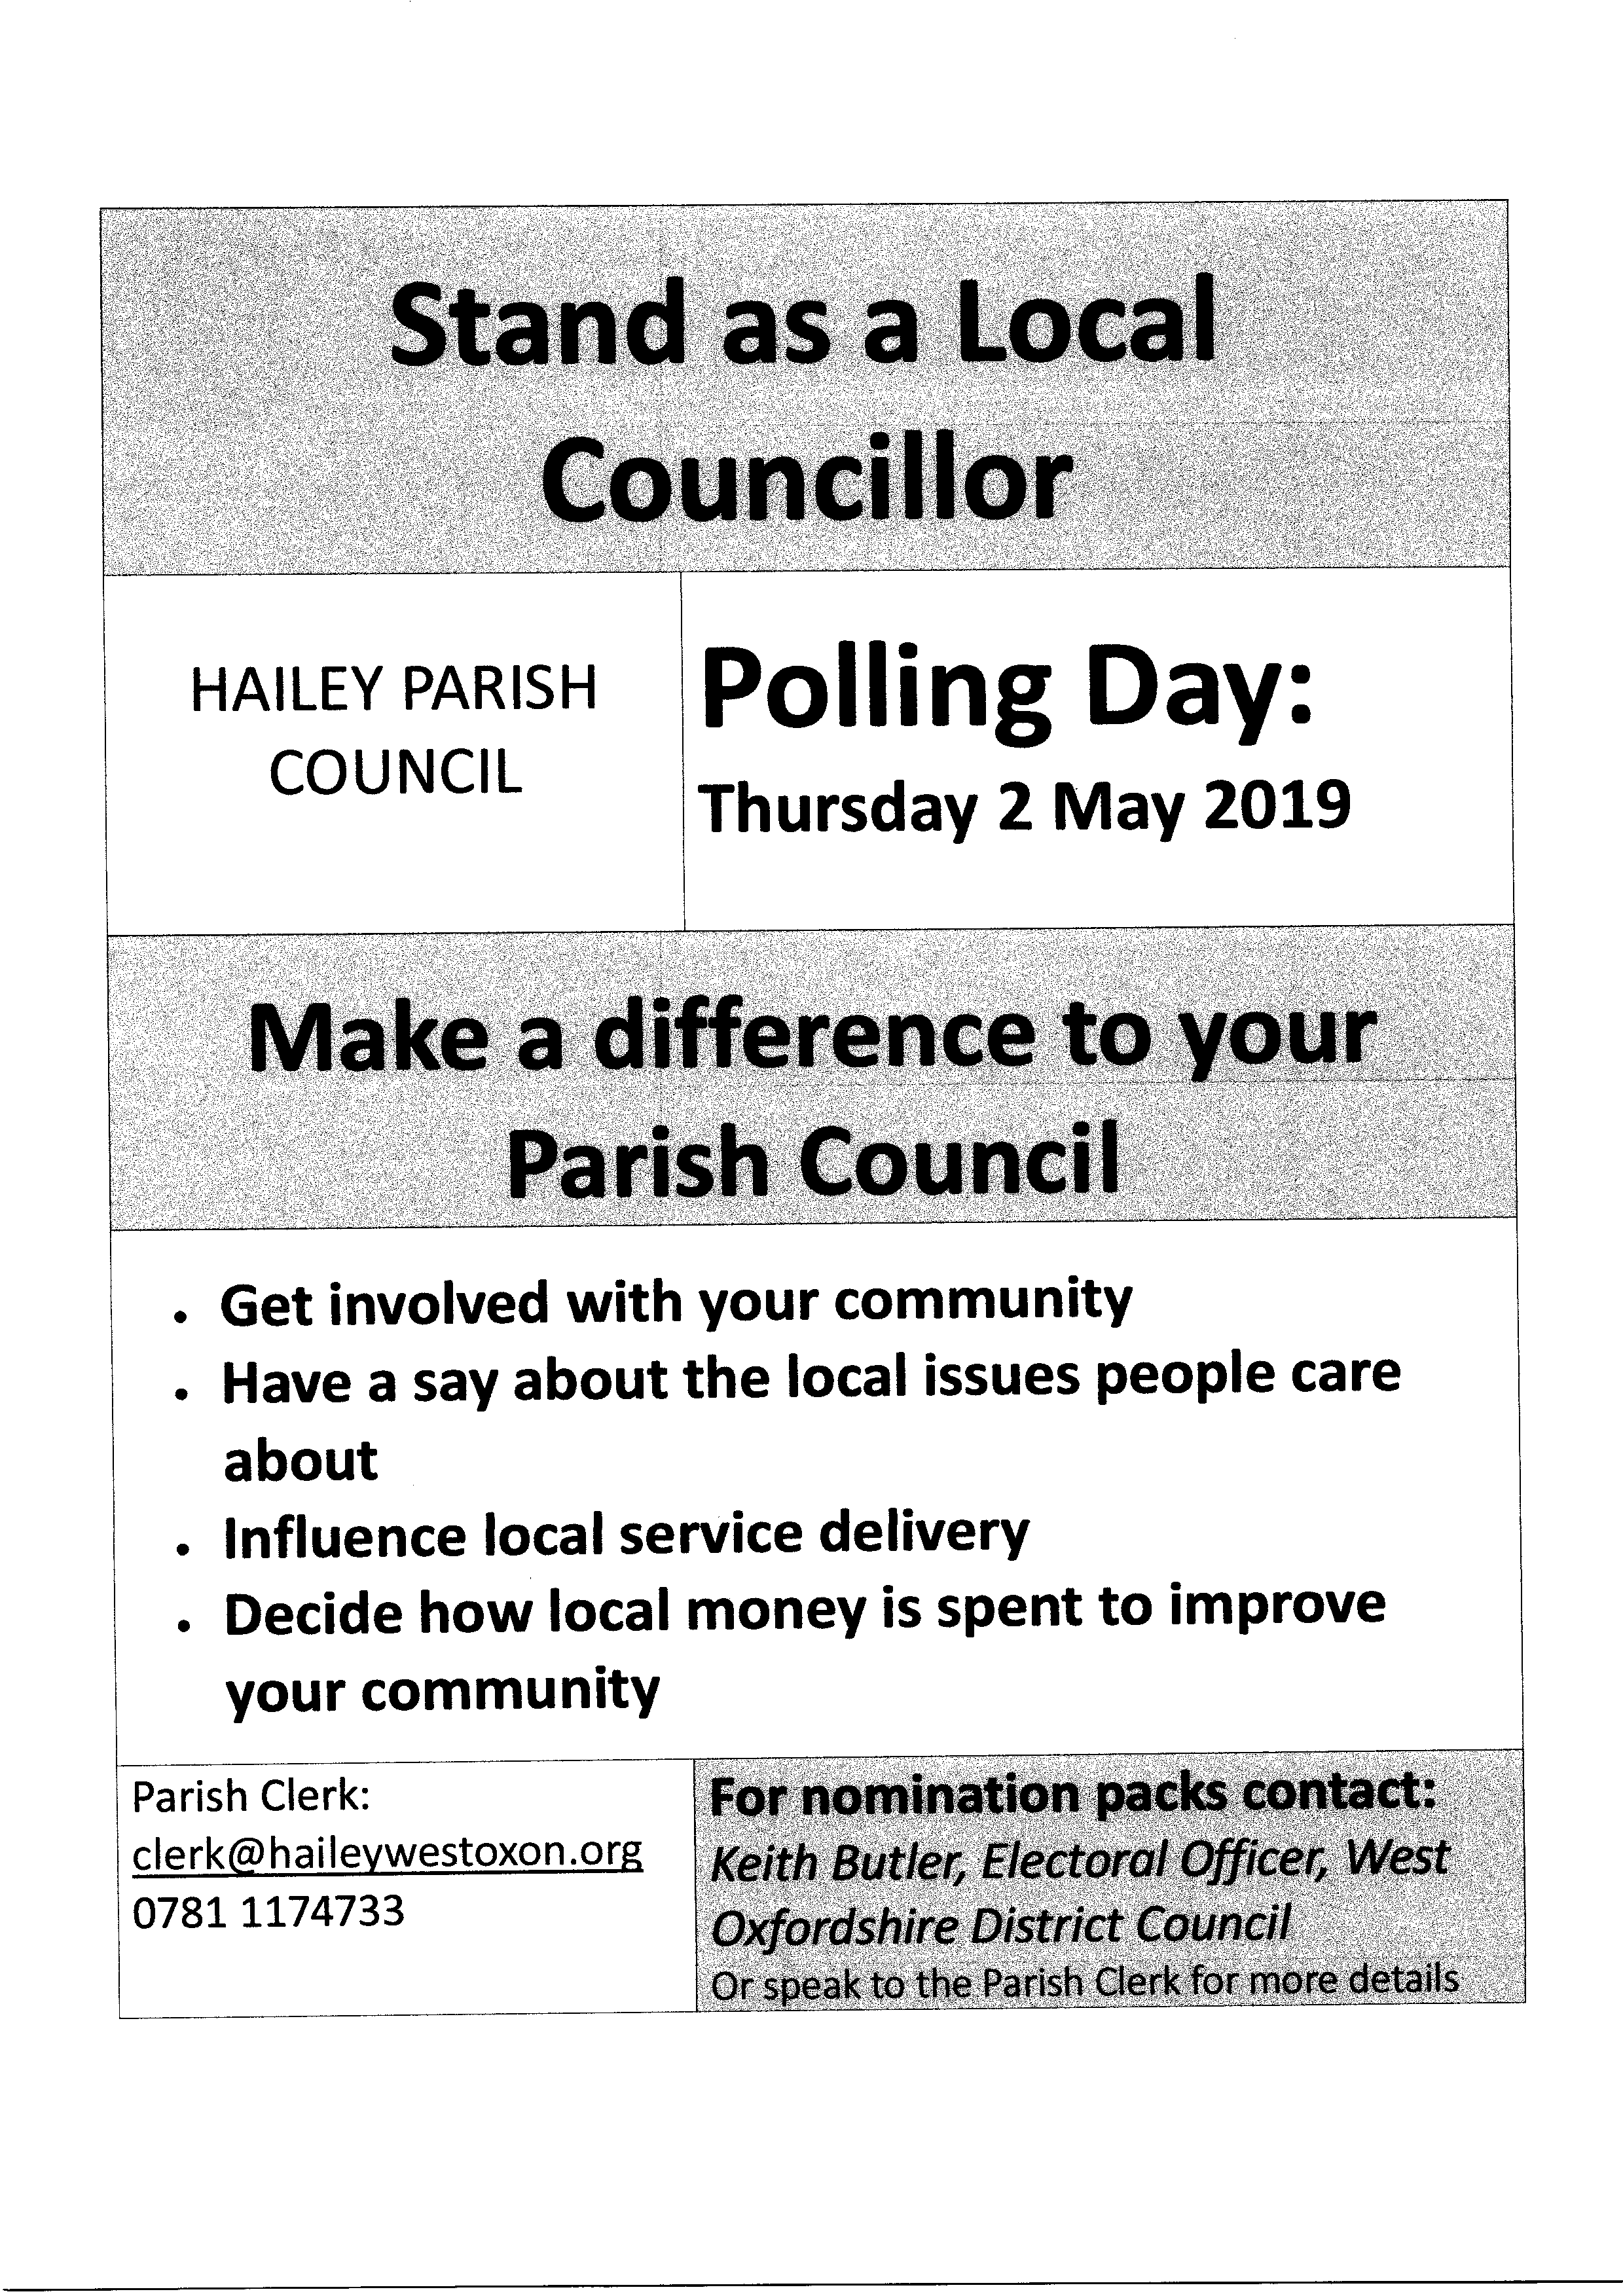 Stand as a Local Councillor, Hailey Parish Council